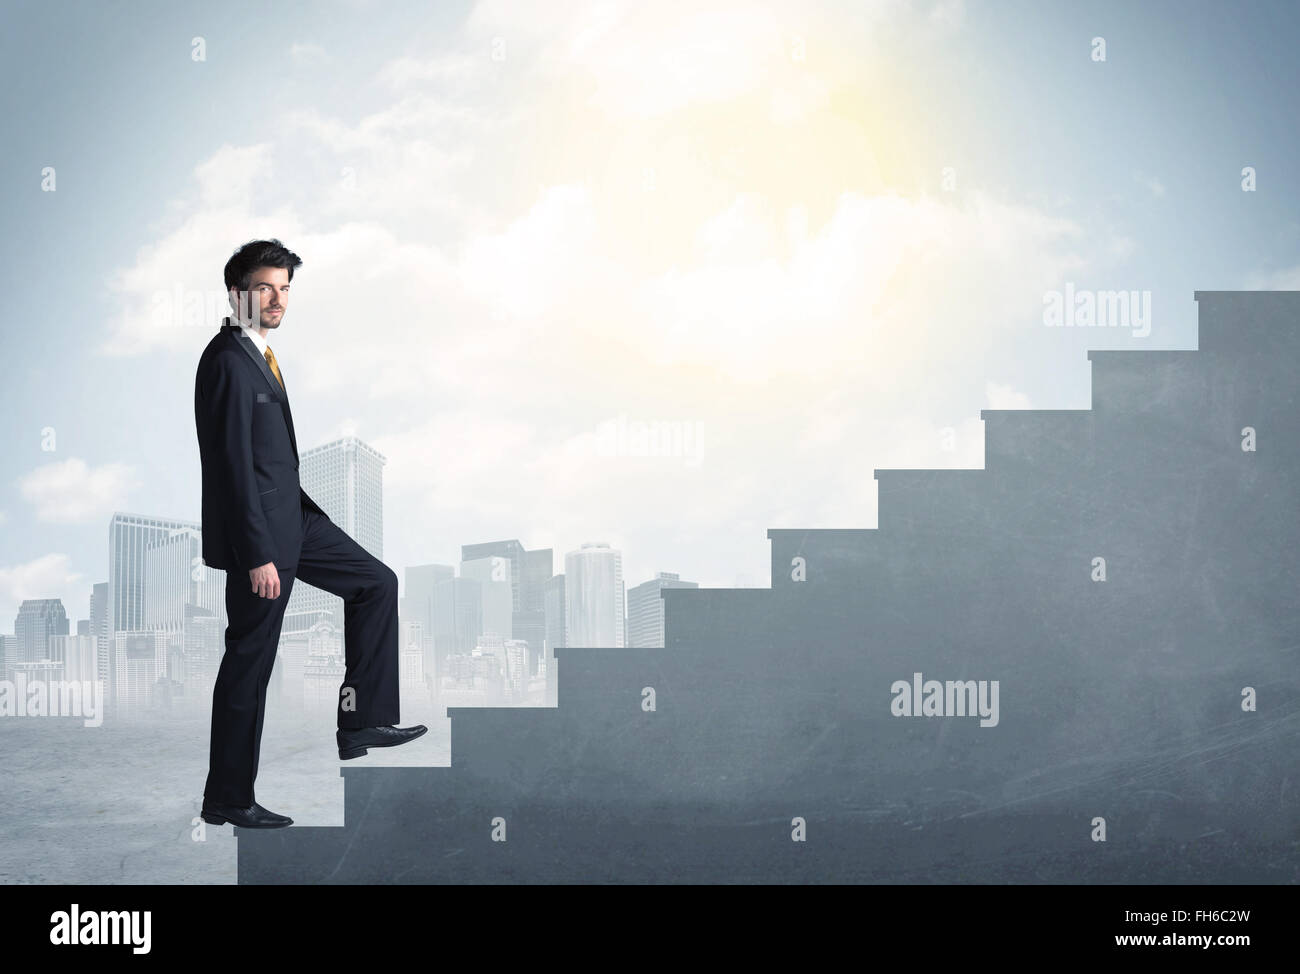 Businessman climbing up a concrete staircase concept Stock Photo